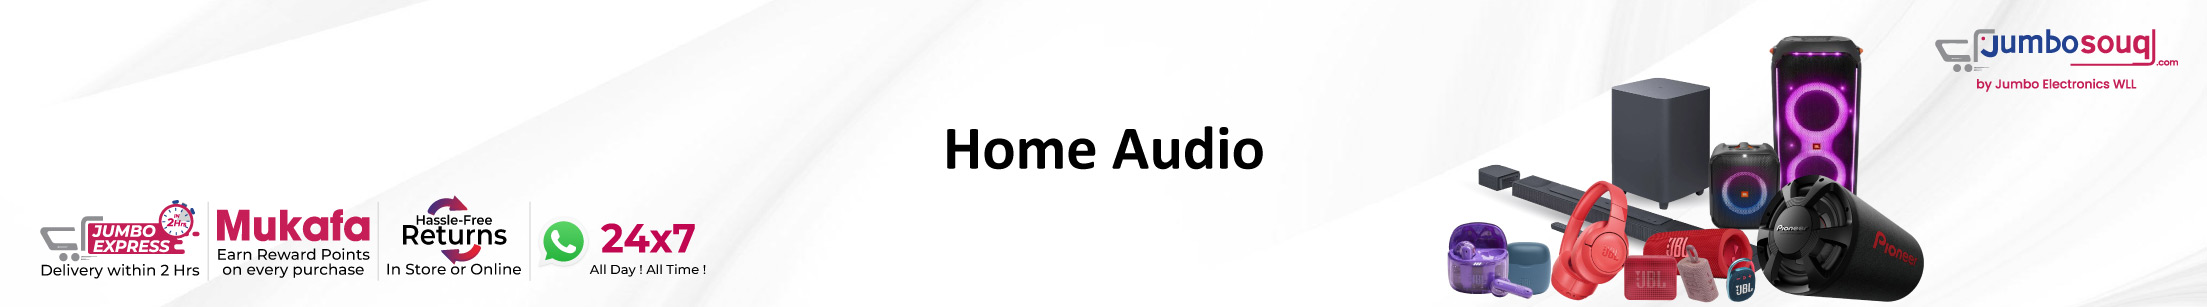 Home Audio